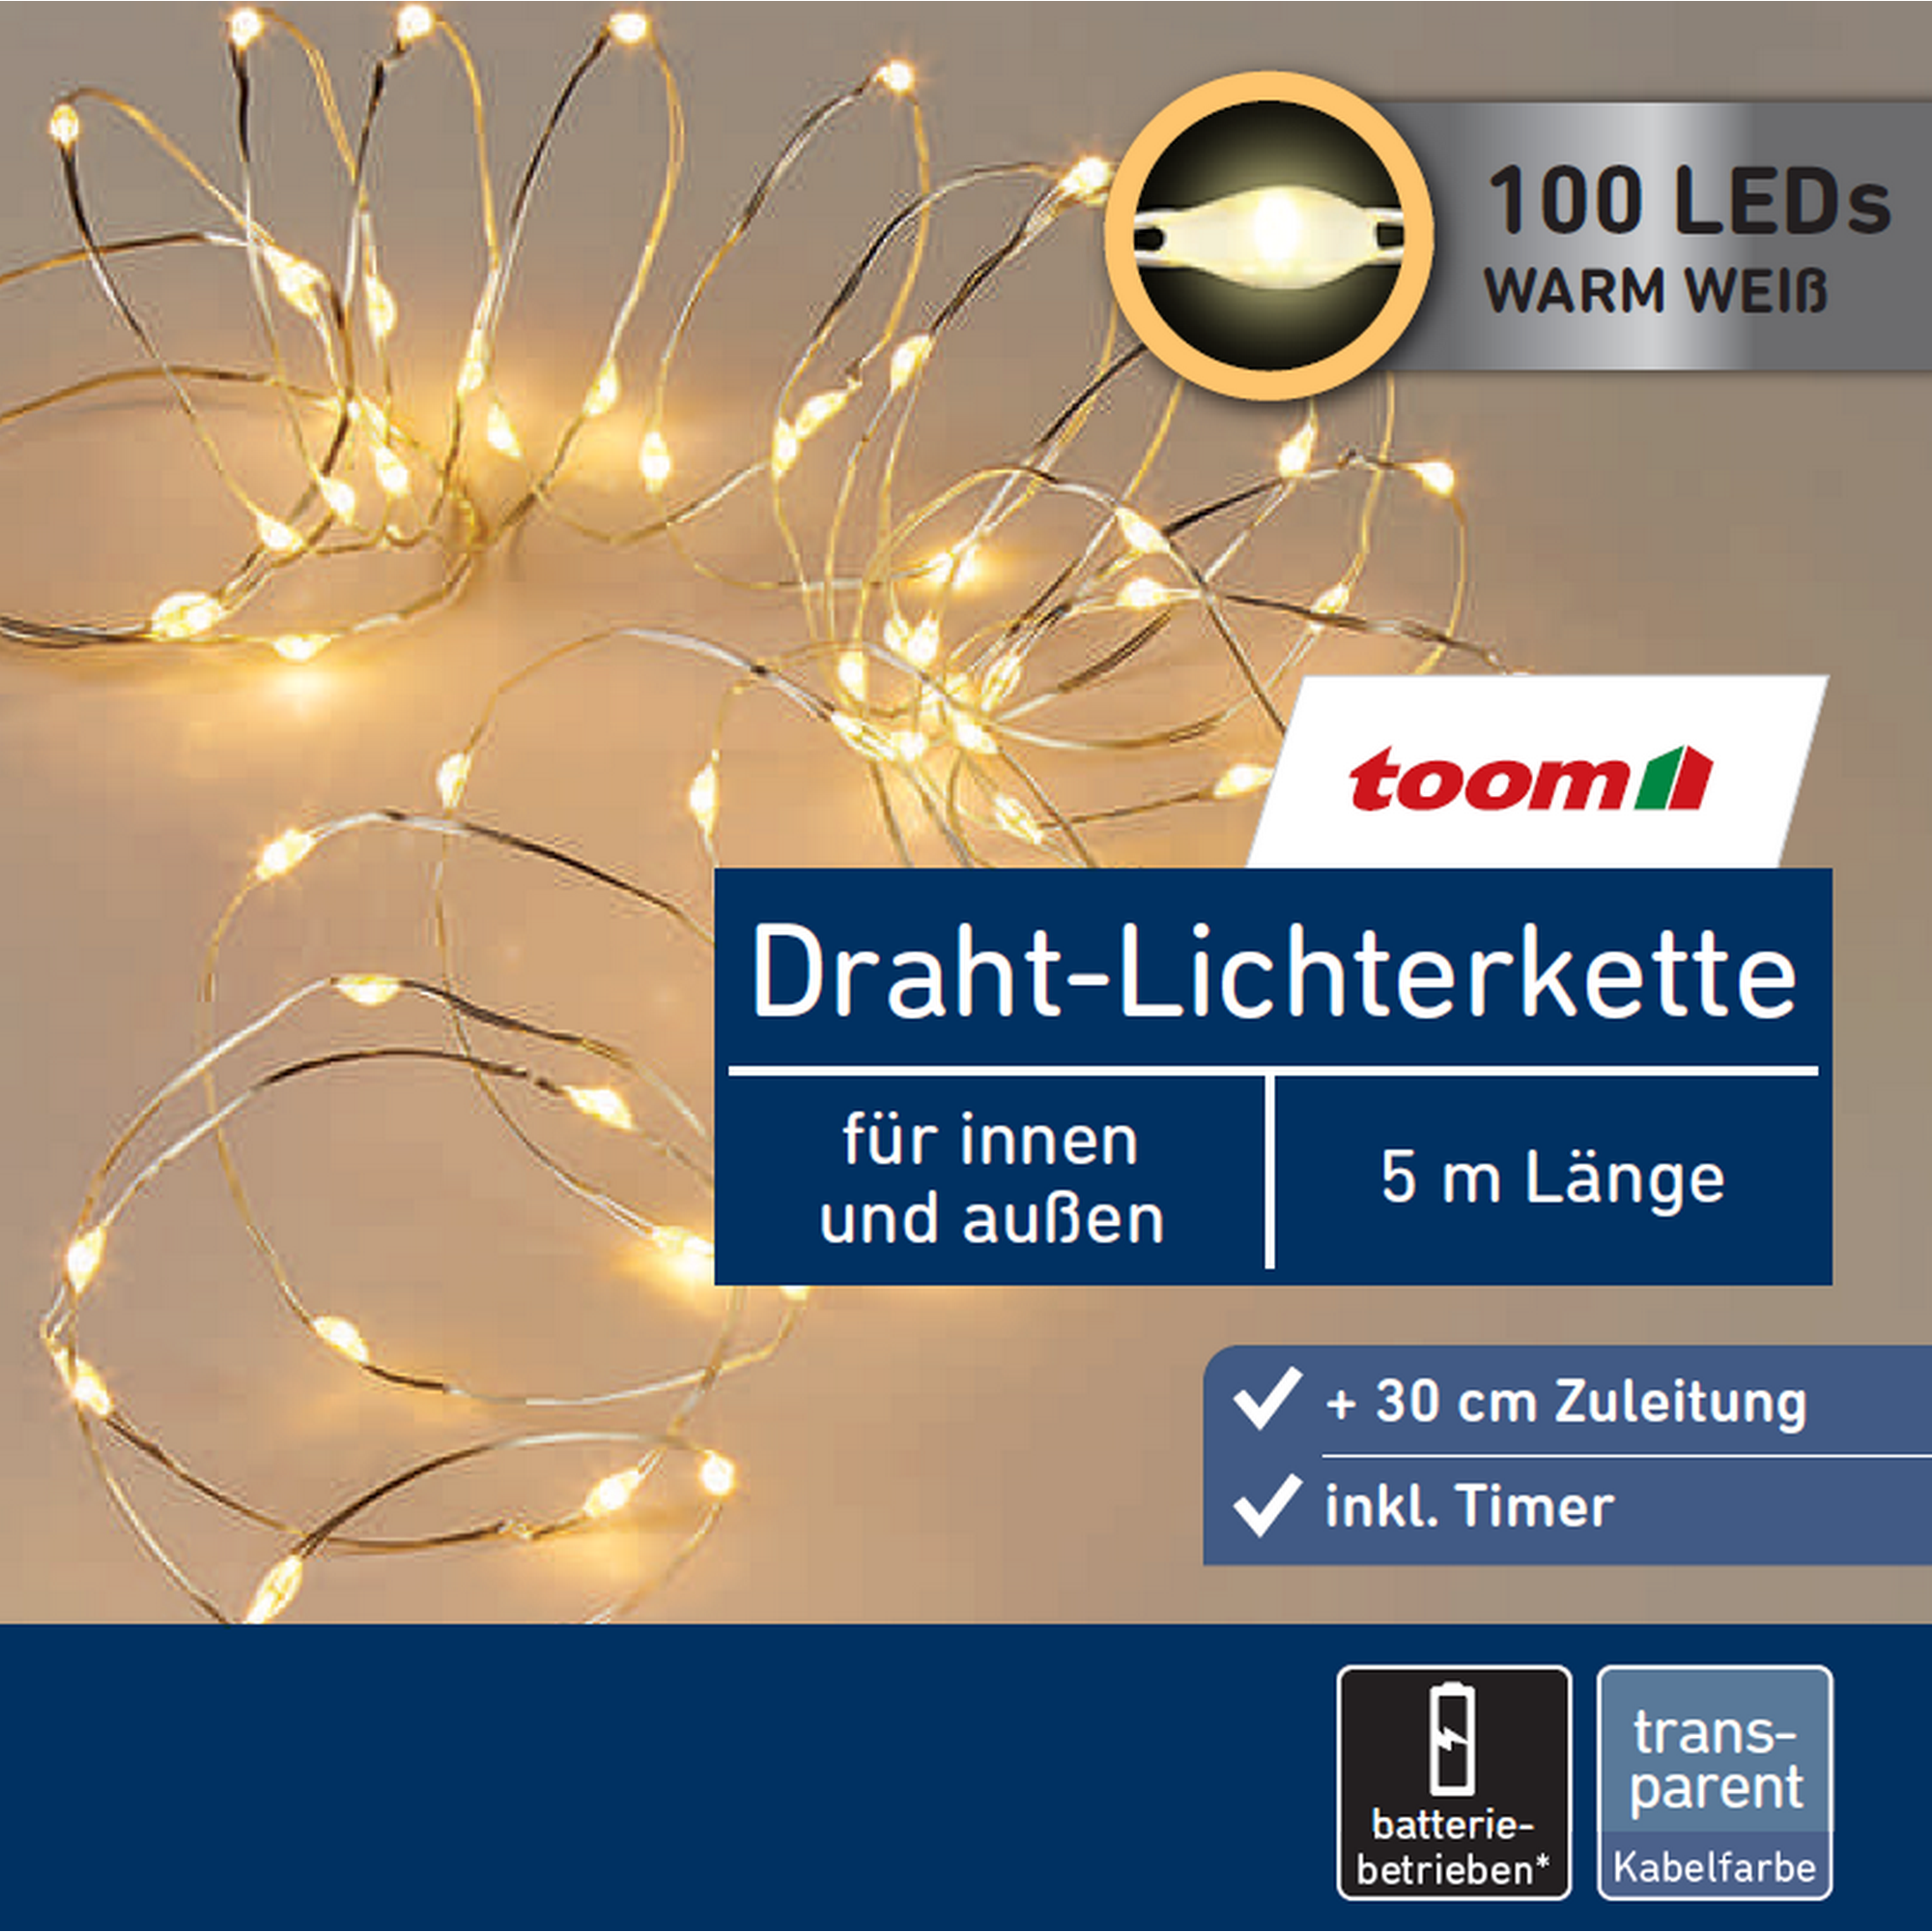 LED-Draht-Lichterkette 100 LEDs warmweiß 500 cm + product picture